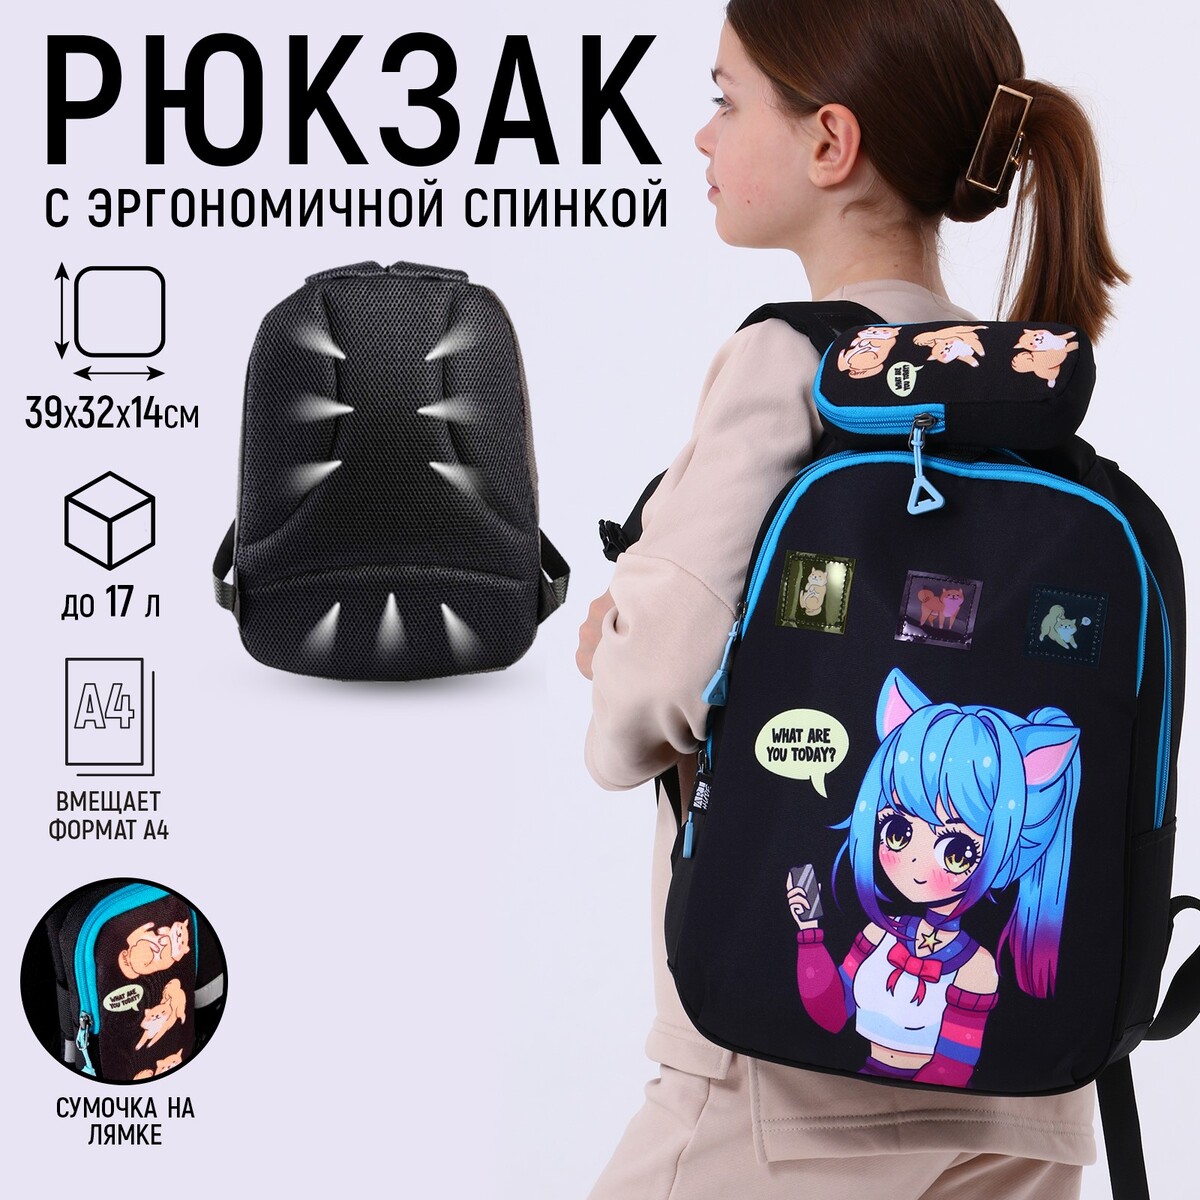 Рюкзак школьный, эргономичная спинка art hype anime, 39x32x14 см ART hype